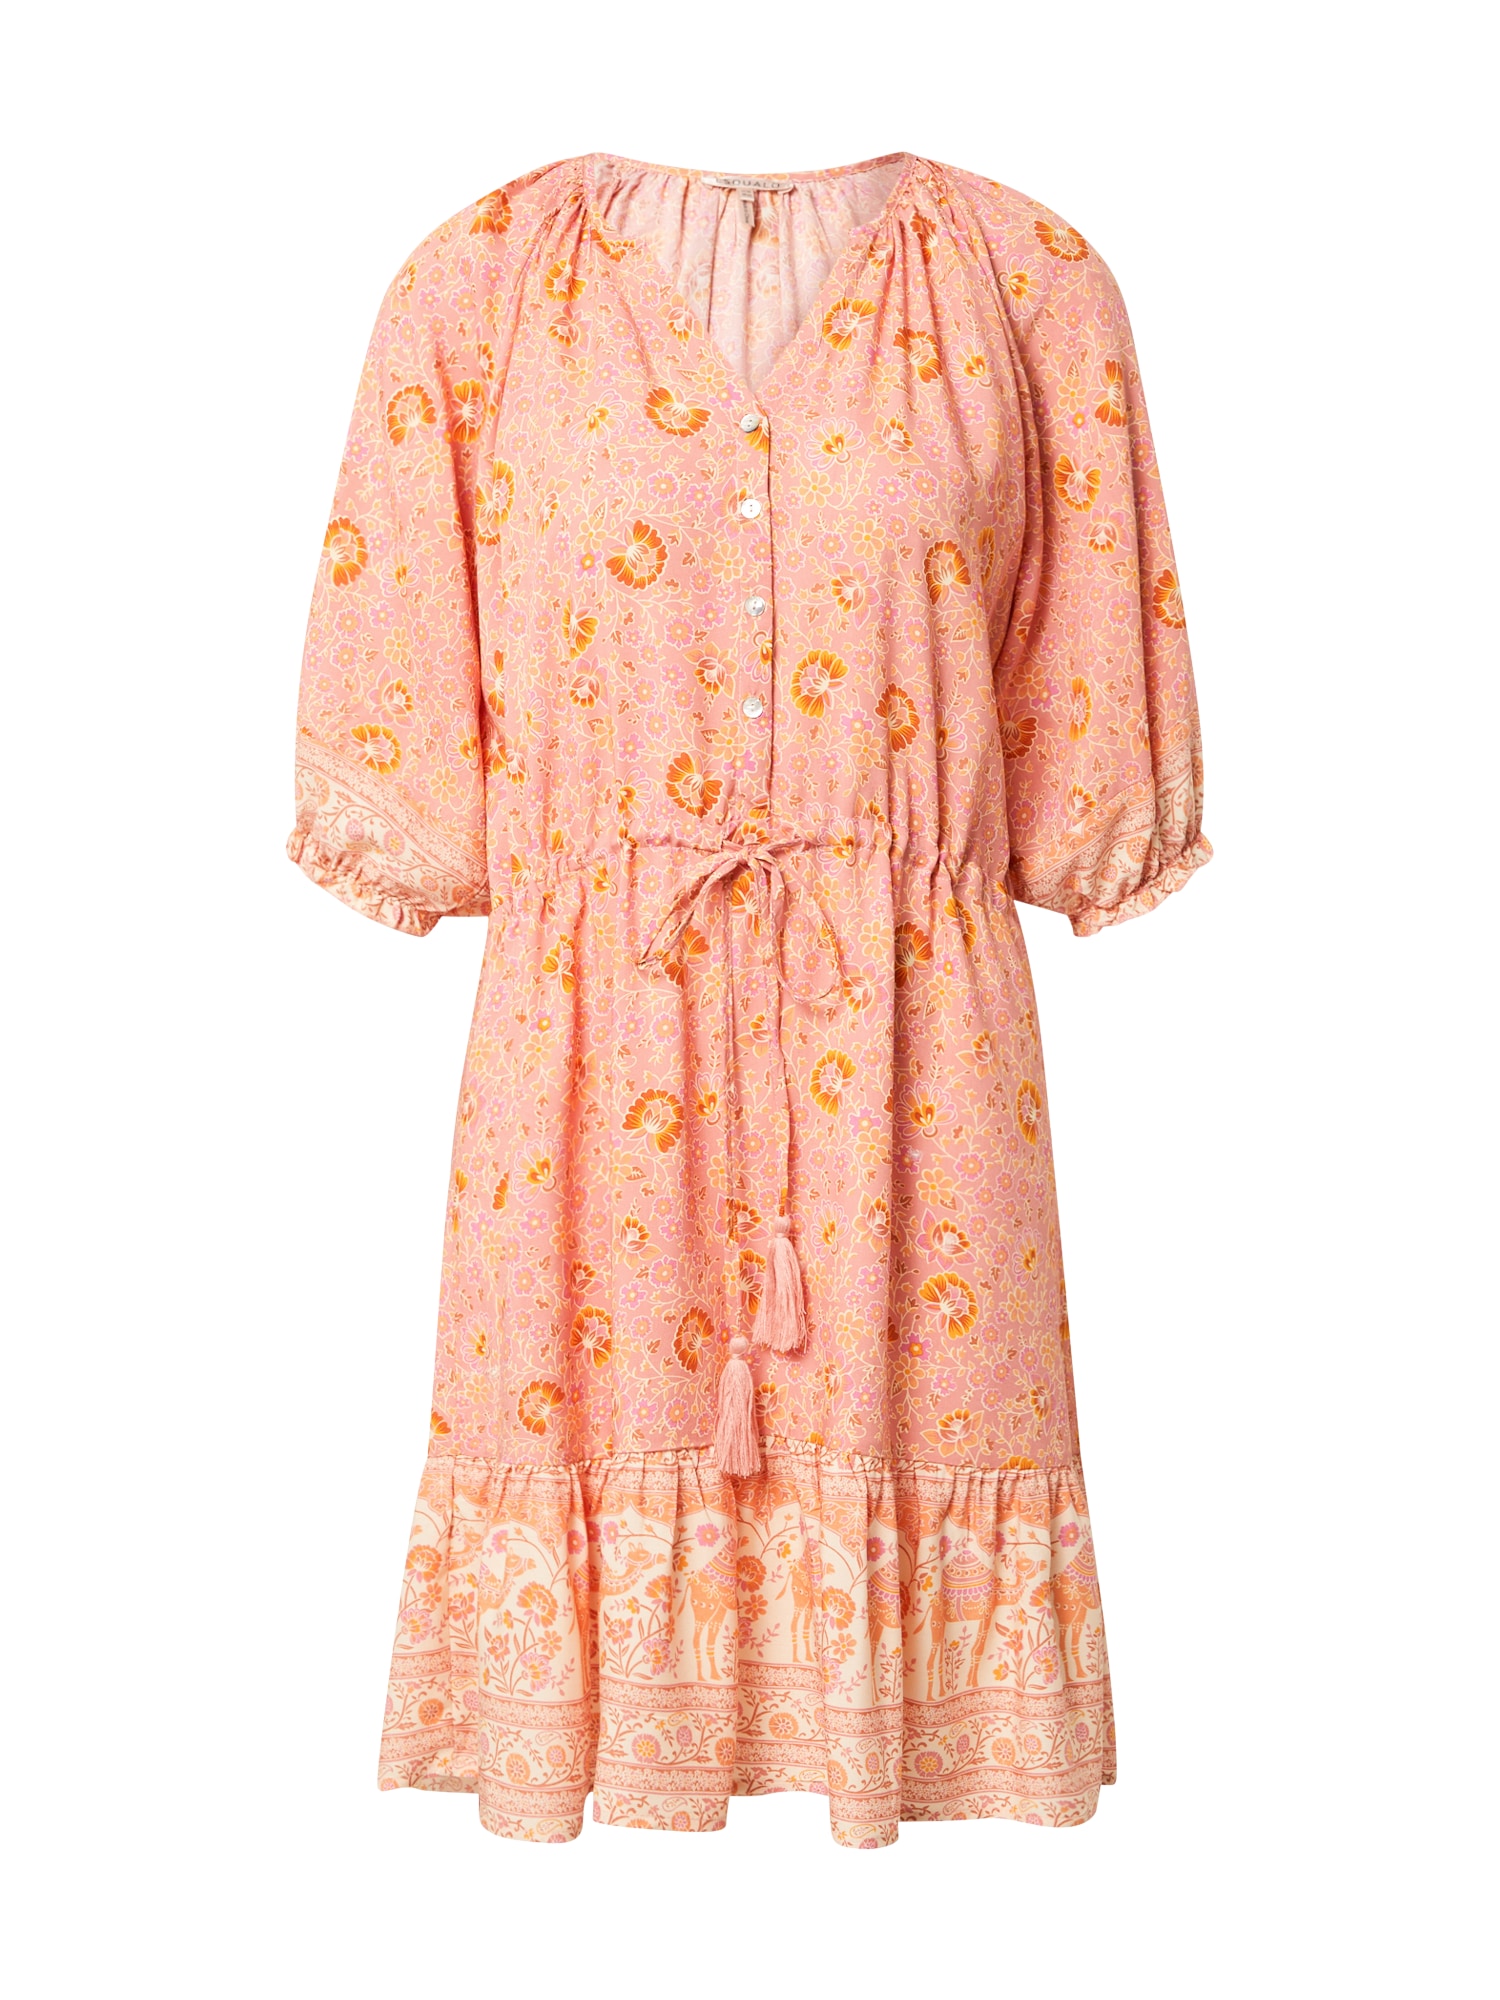 Esqualo Palaidinės tipo suknelė šafrano spalva / abrikosų spalva / persikų spalva